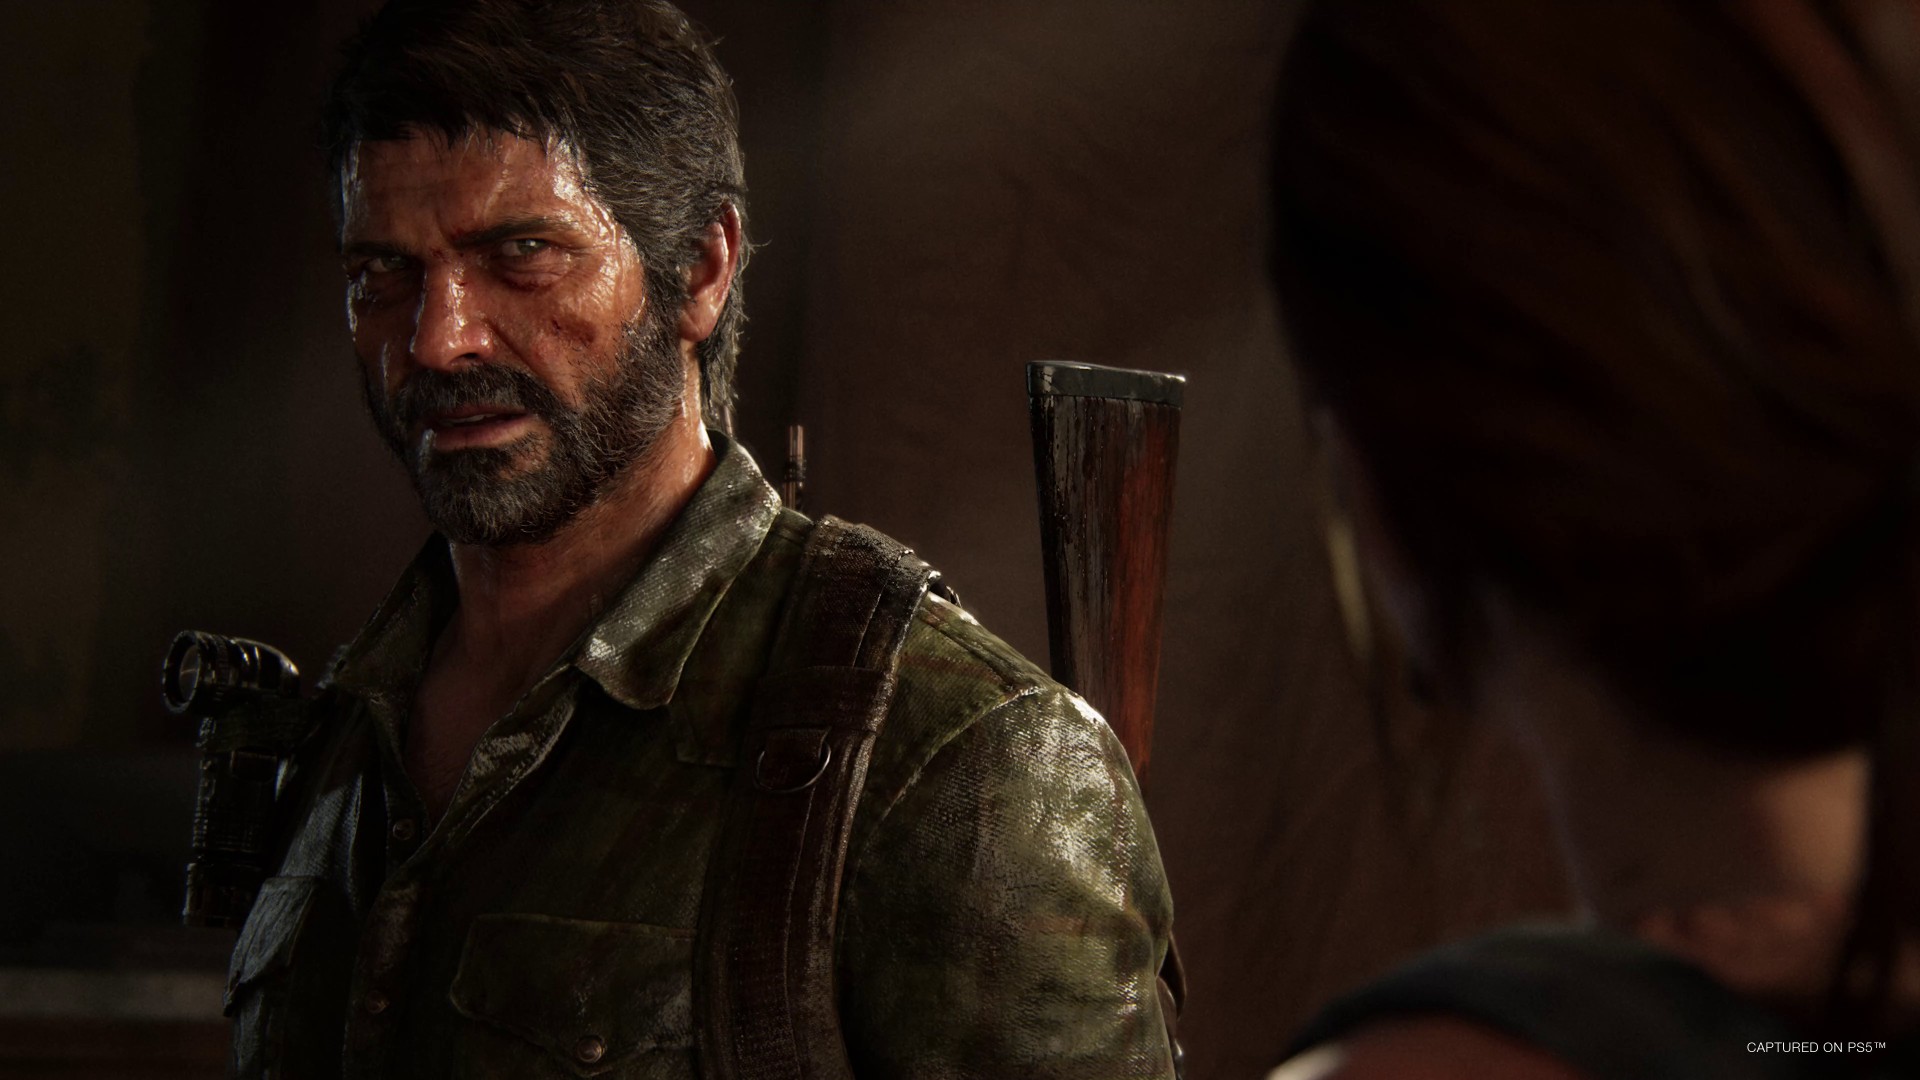 เกม The Last of Us ทั้งสองภาคกลับมาขายดีอีกครั้งใน PSN หลังจากซีรีส์ออกฉาย